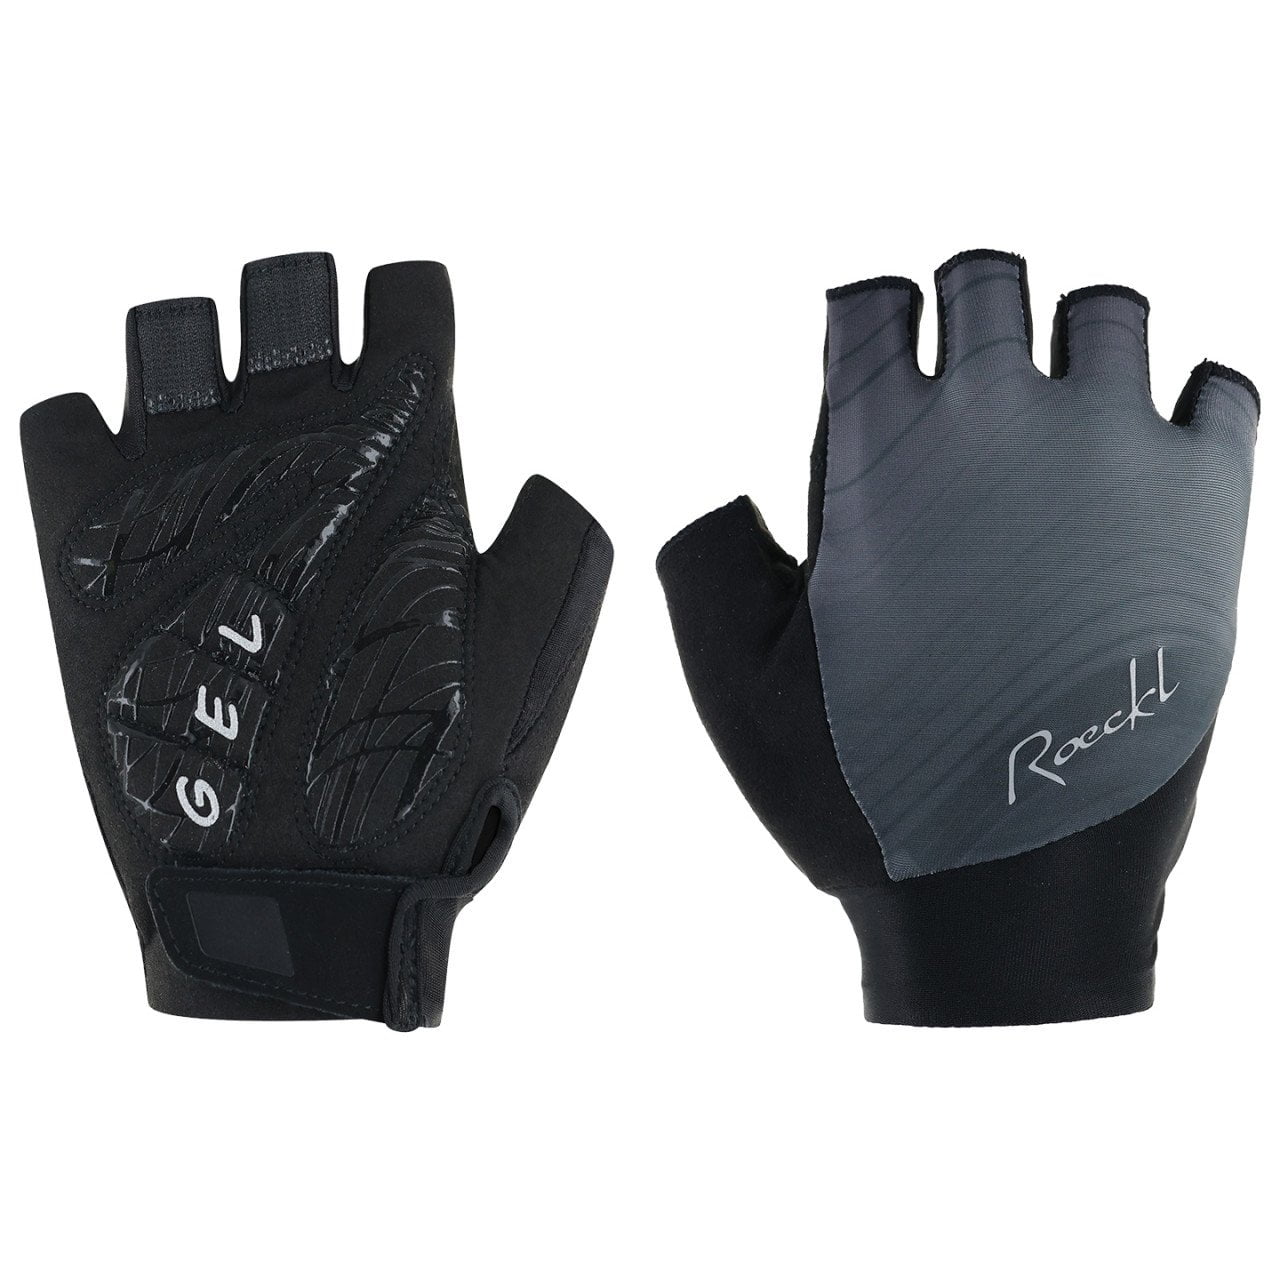 Danis 2 Women's Gloves